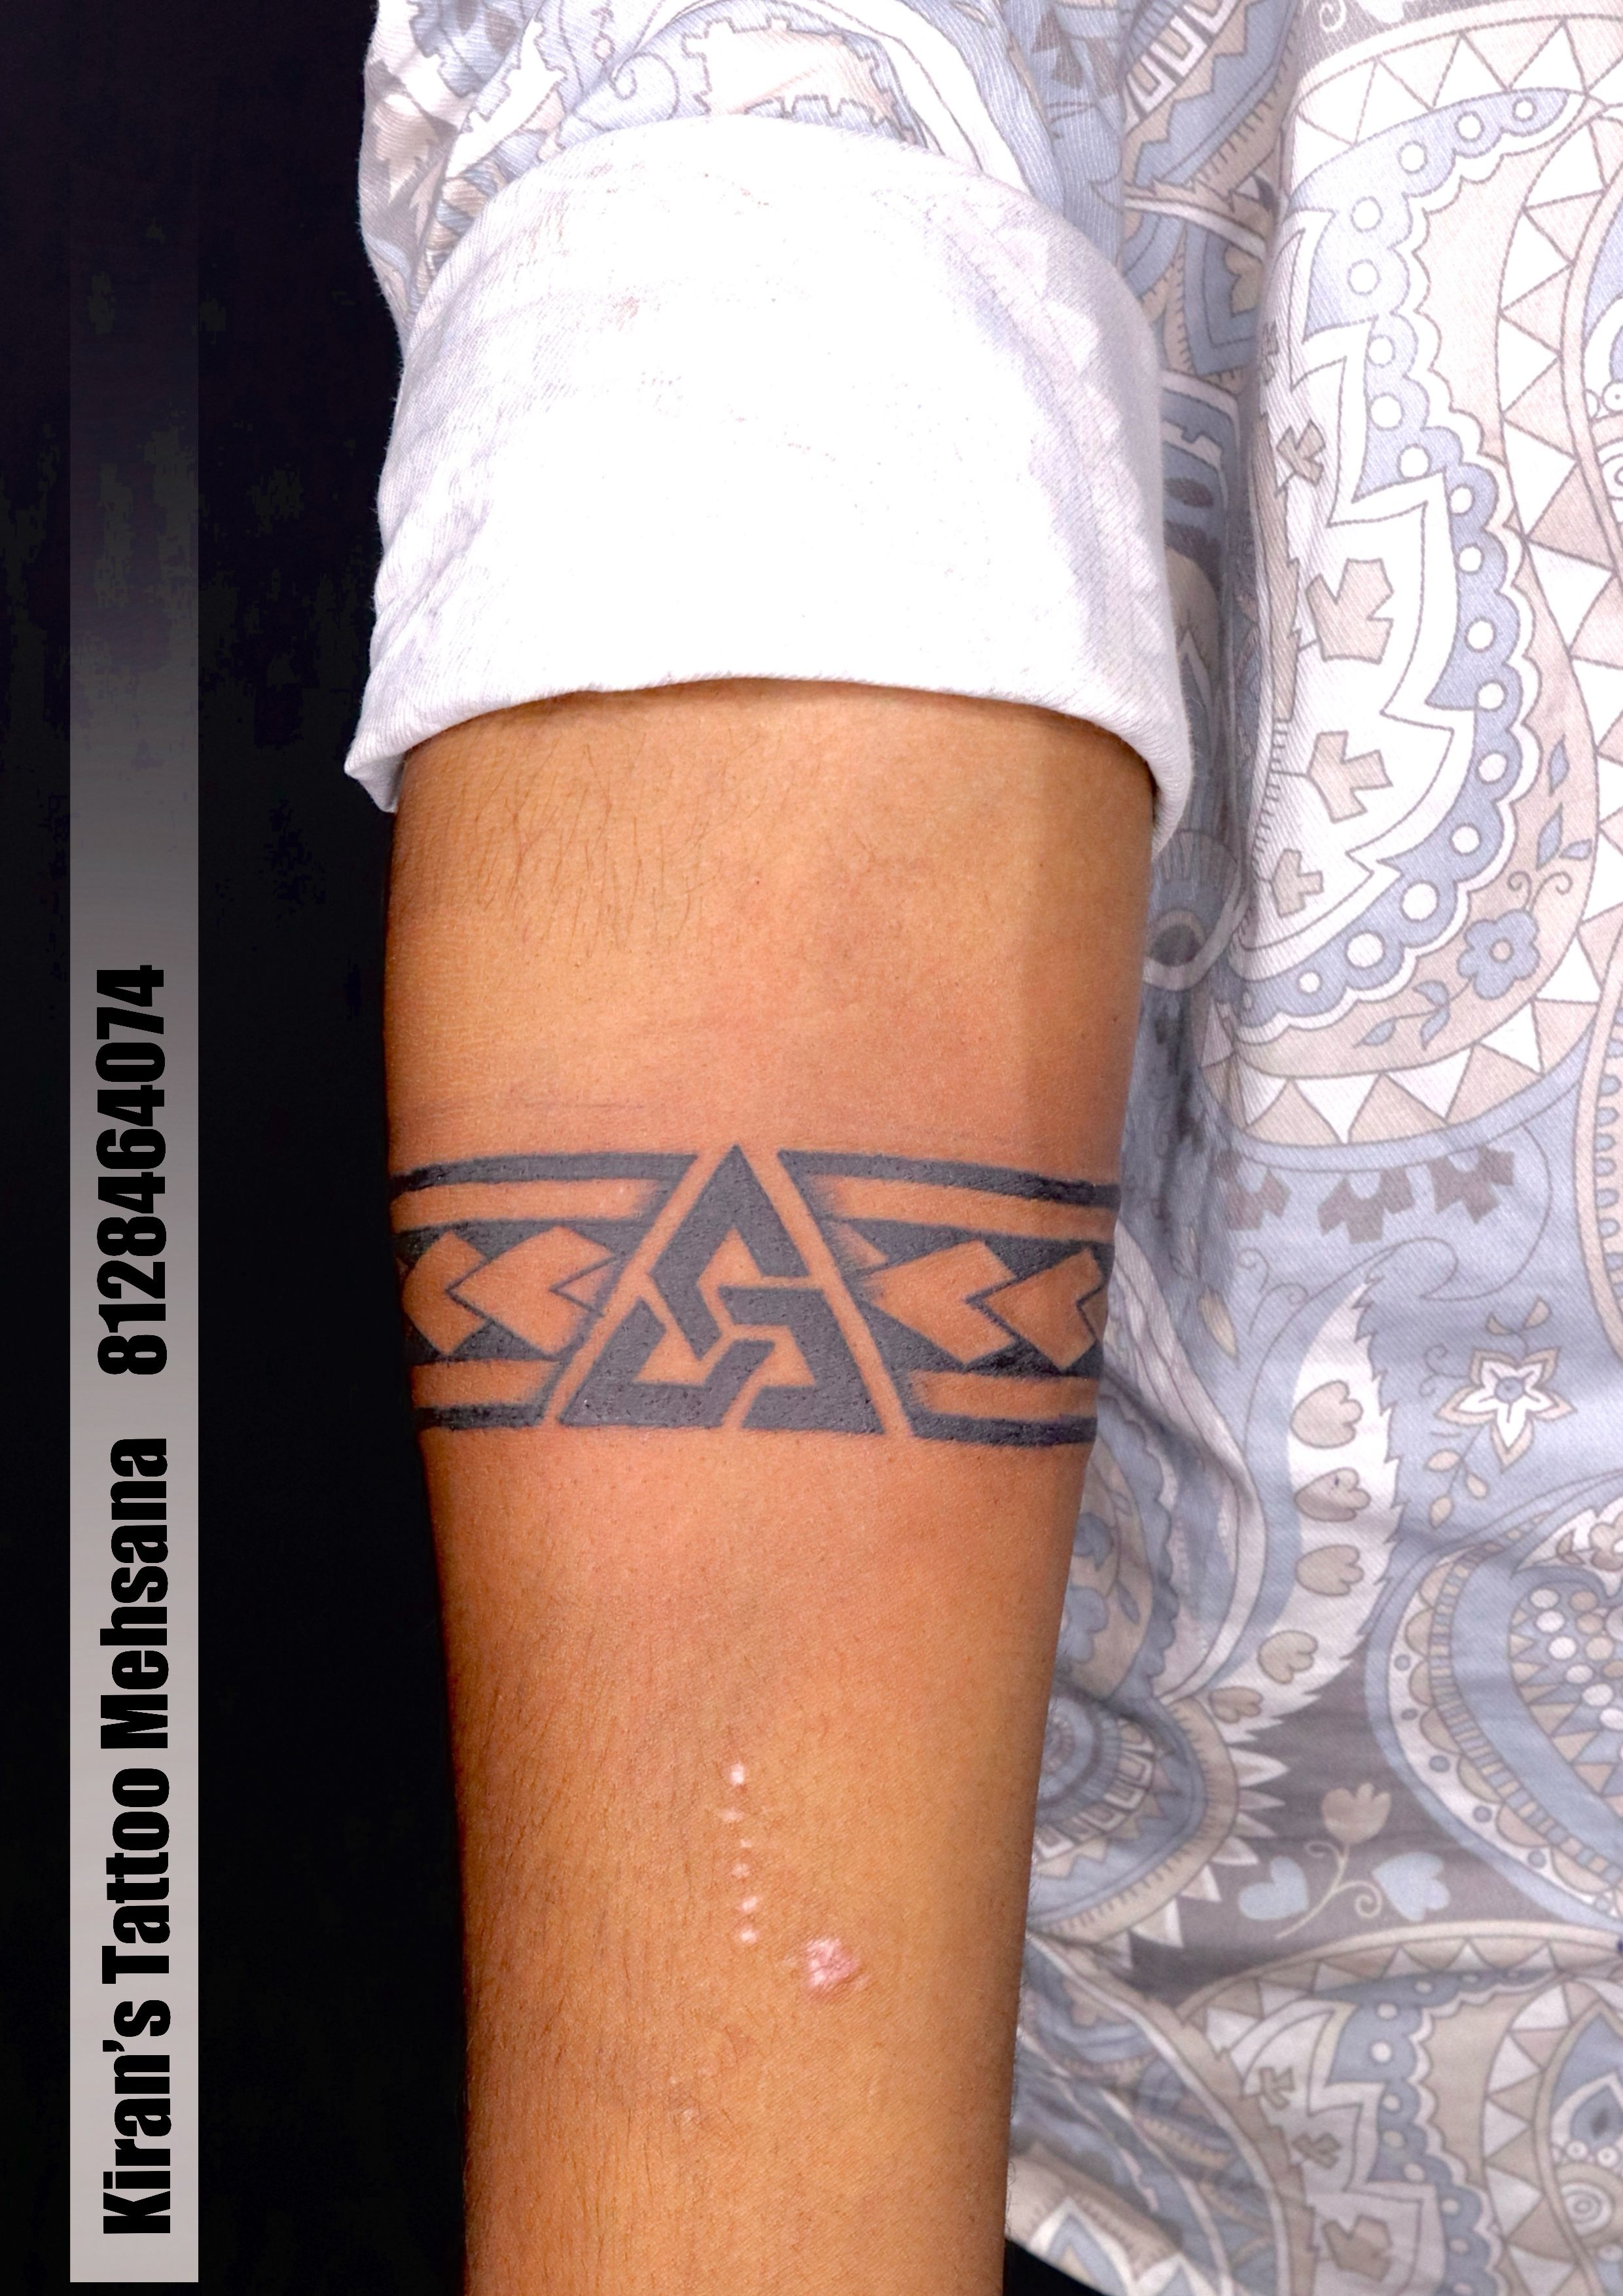 Men's wrist tattoo Wrist tattoo designs for men Small wrist tattoos for  guys Cool wrist tattoo | Wrist tattoos for guys, Tattoos for guys, Band  tattoo designs